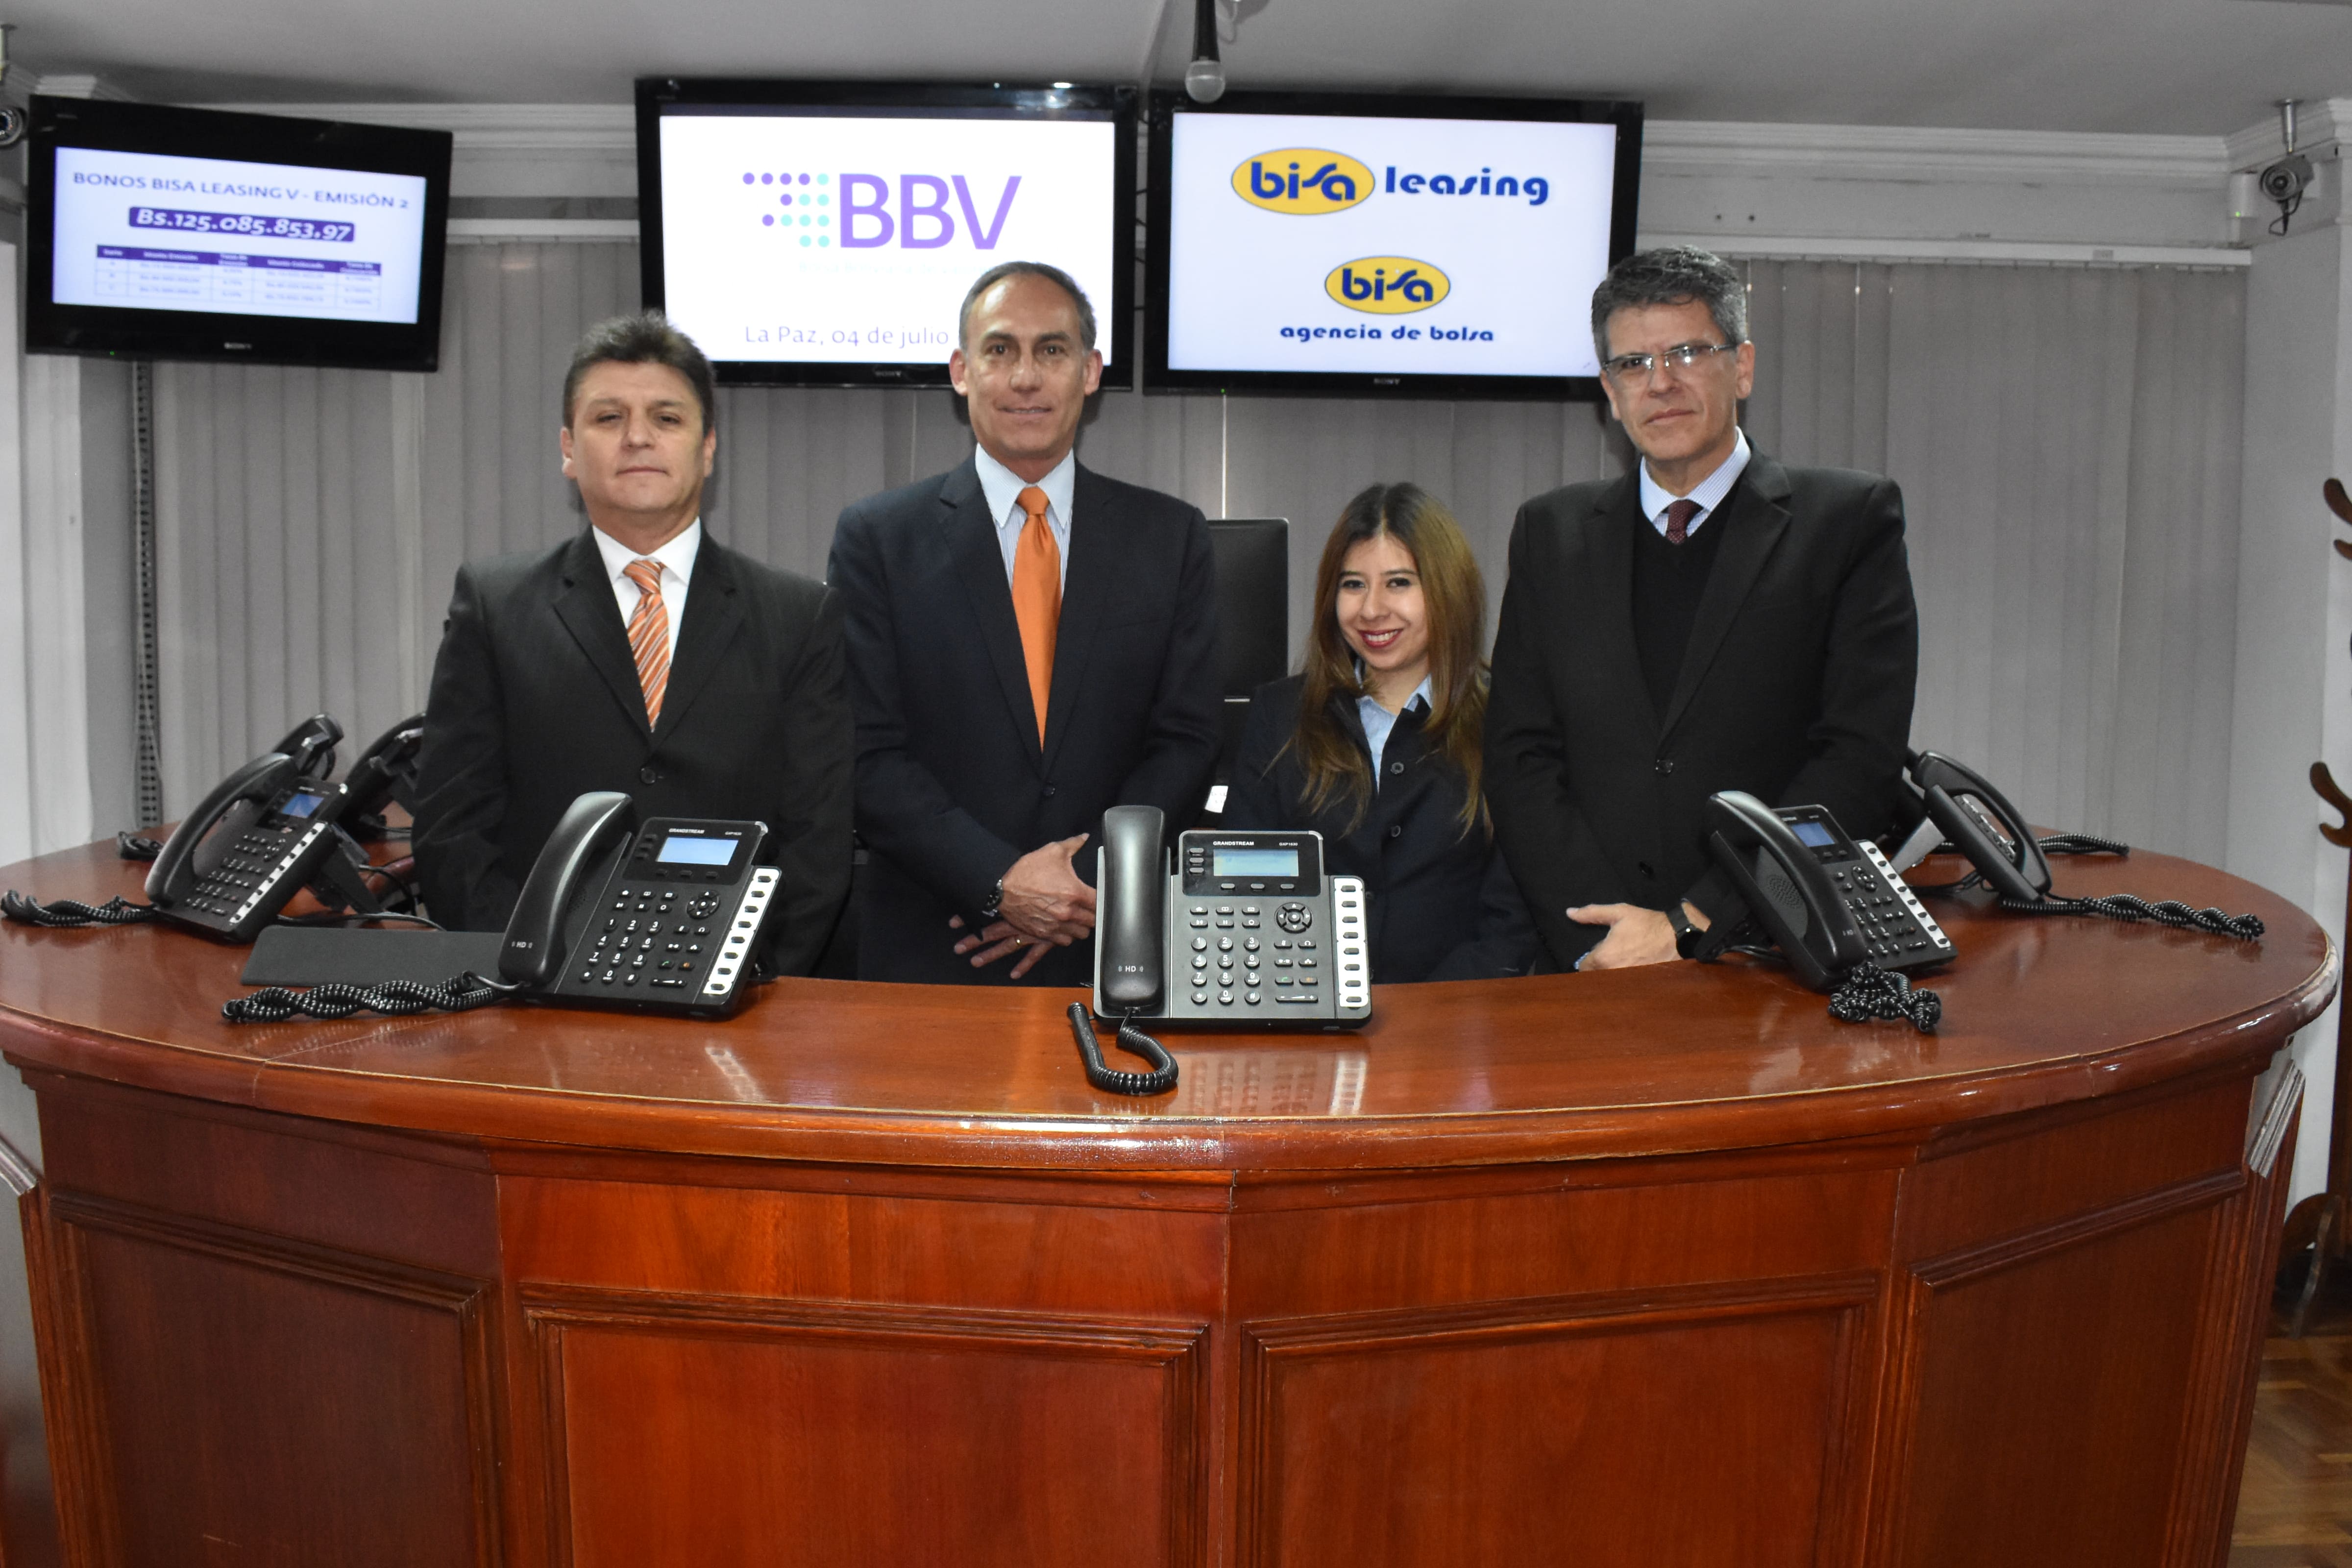 BISA LEASING S.A. recibe financiamiento por 125 millones de bolivianos a través de la Bolsa Boliviana de Valores